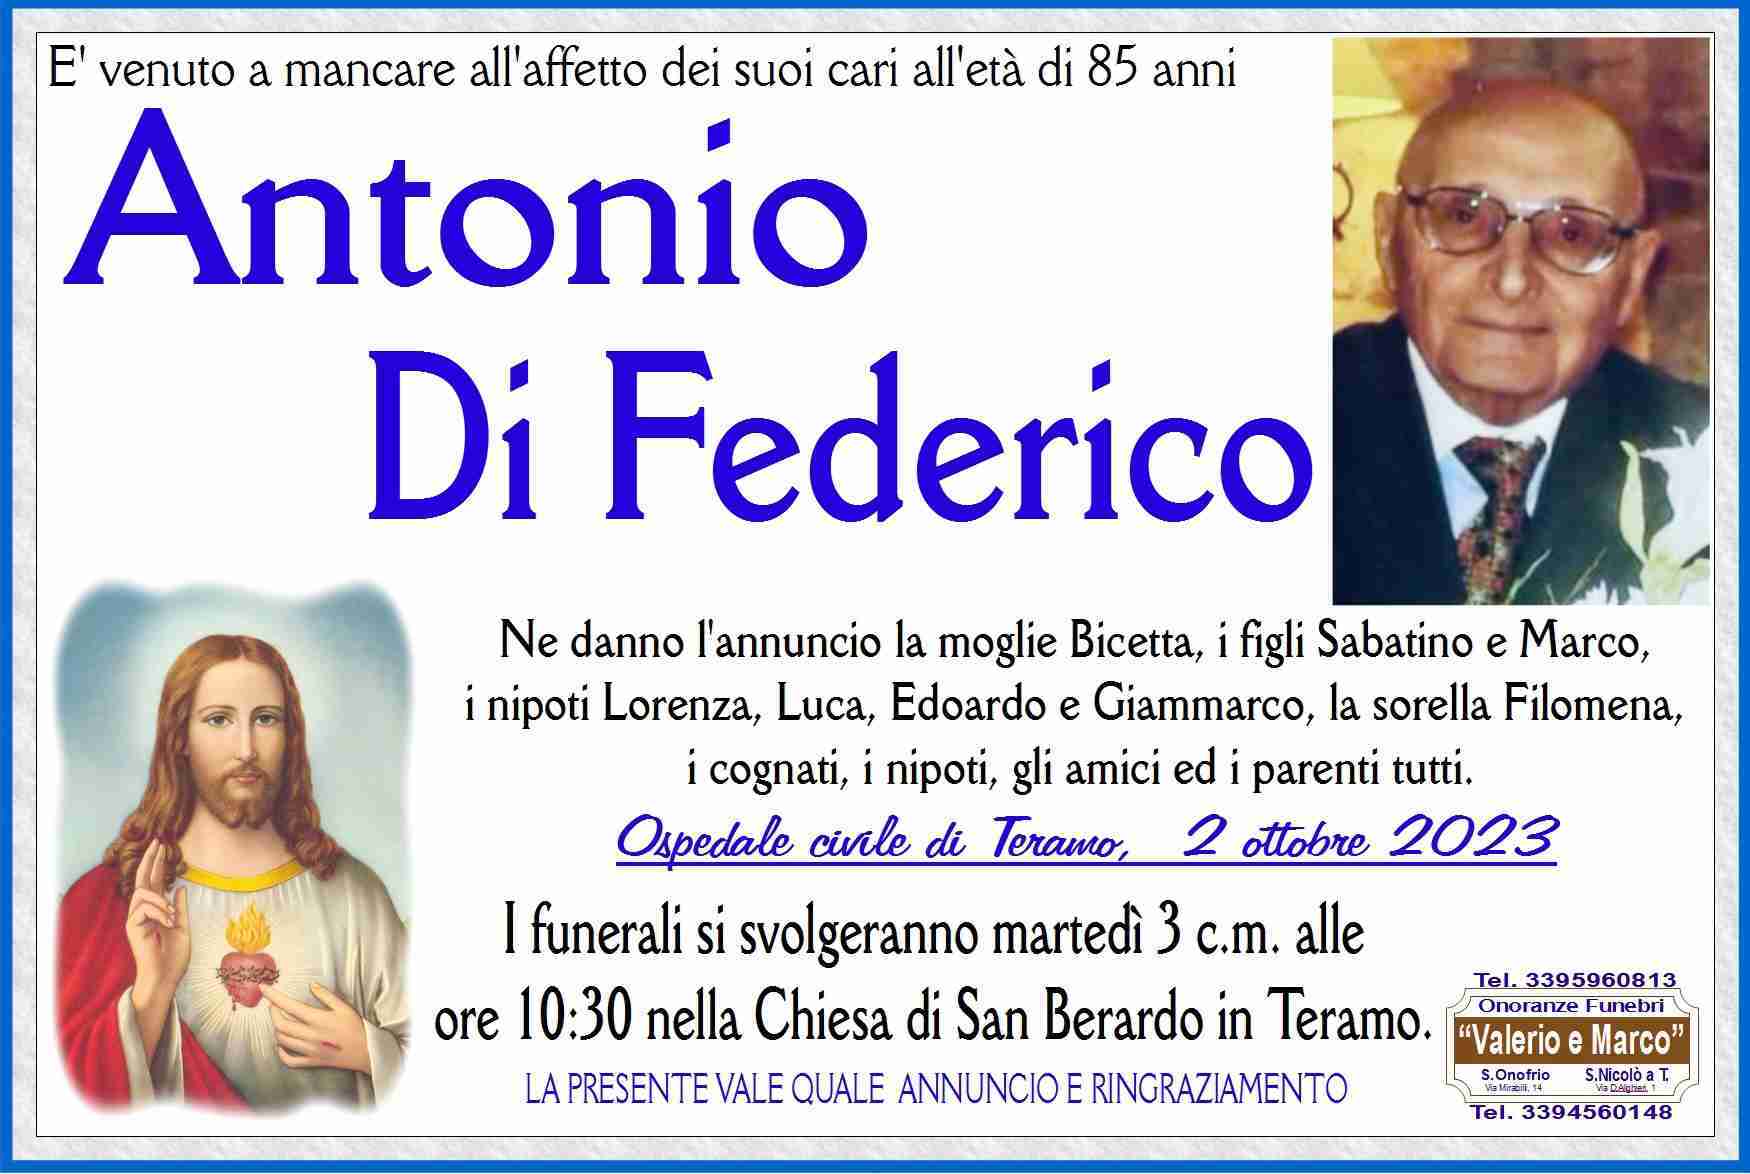 Antonio Di Federico